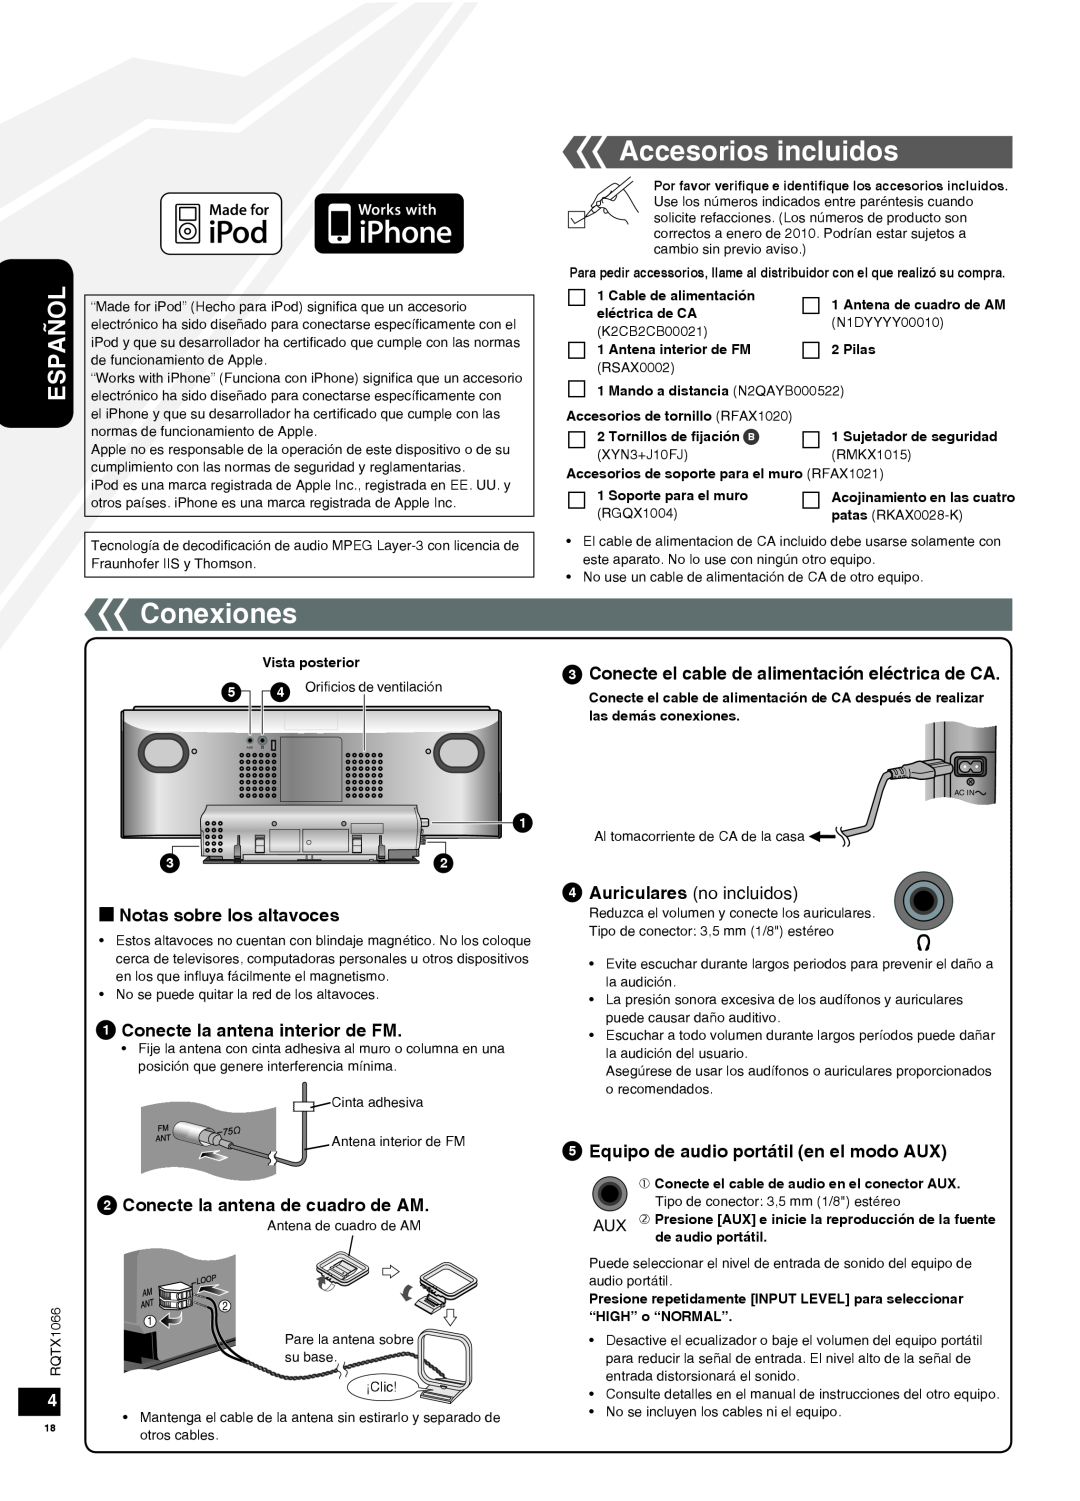 Panasonic SC-HC30 Conexiones, Accesorios incluidos, g Notas sobre los altavoces, Conecte la antena interior de FM, Español 